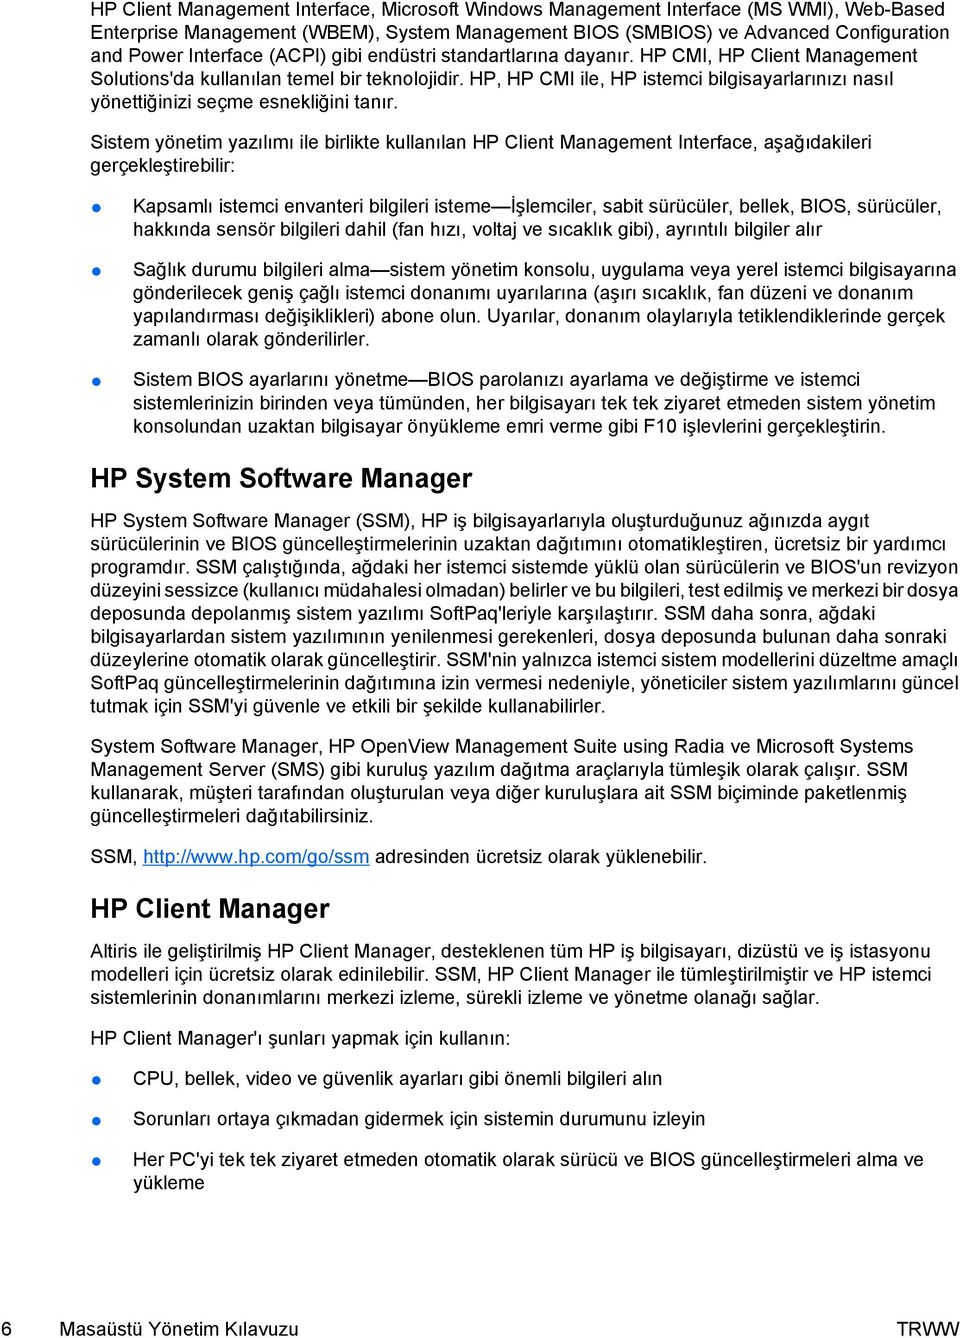 HP, HP CMI ile, HP istemci bilgisayarlarınızı nasıl yönettiğinizi seçme esnekliğini tanır.